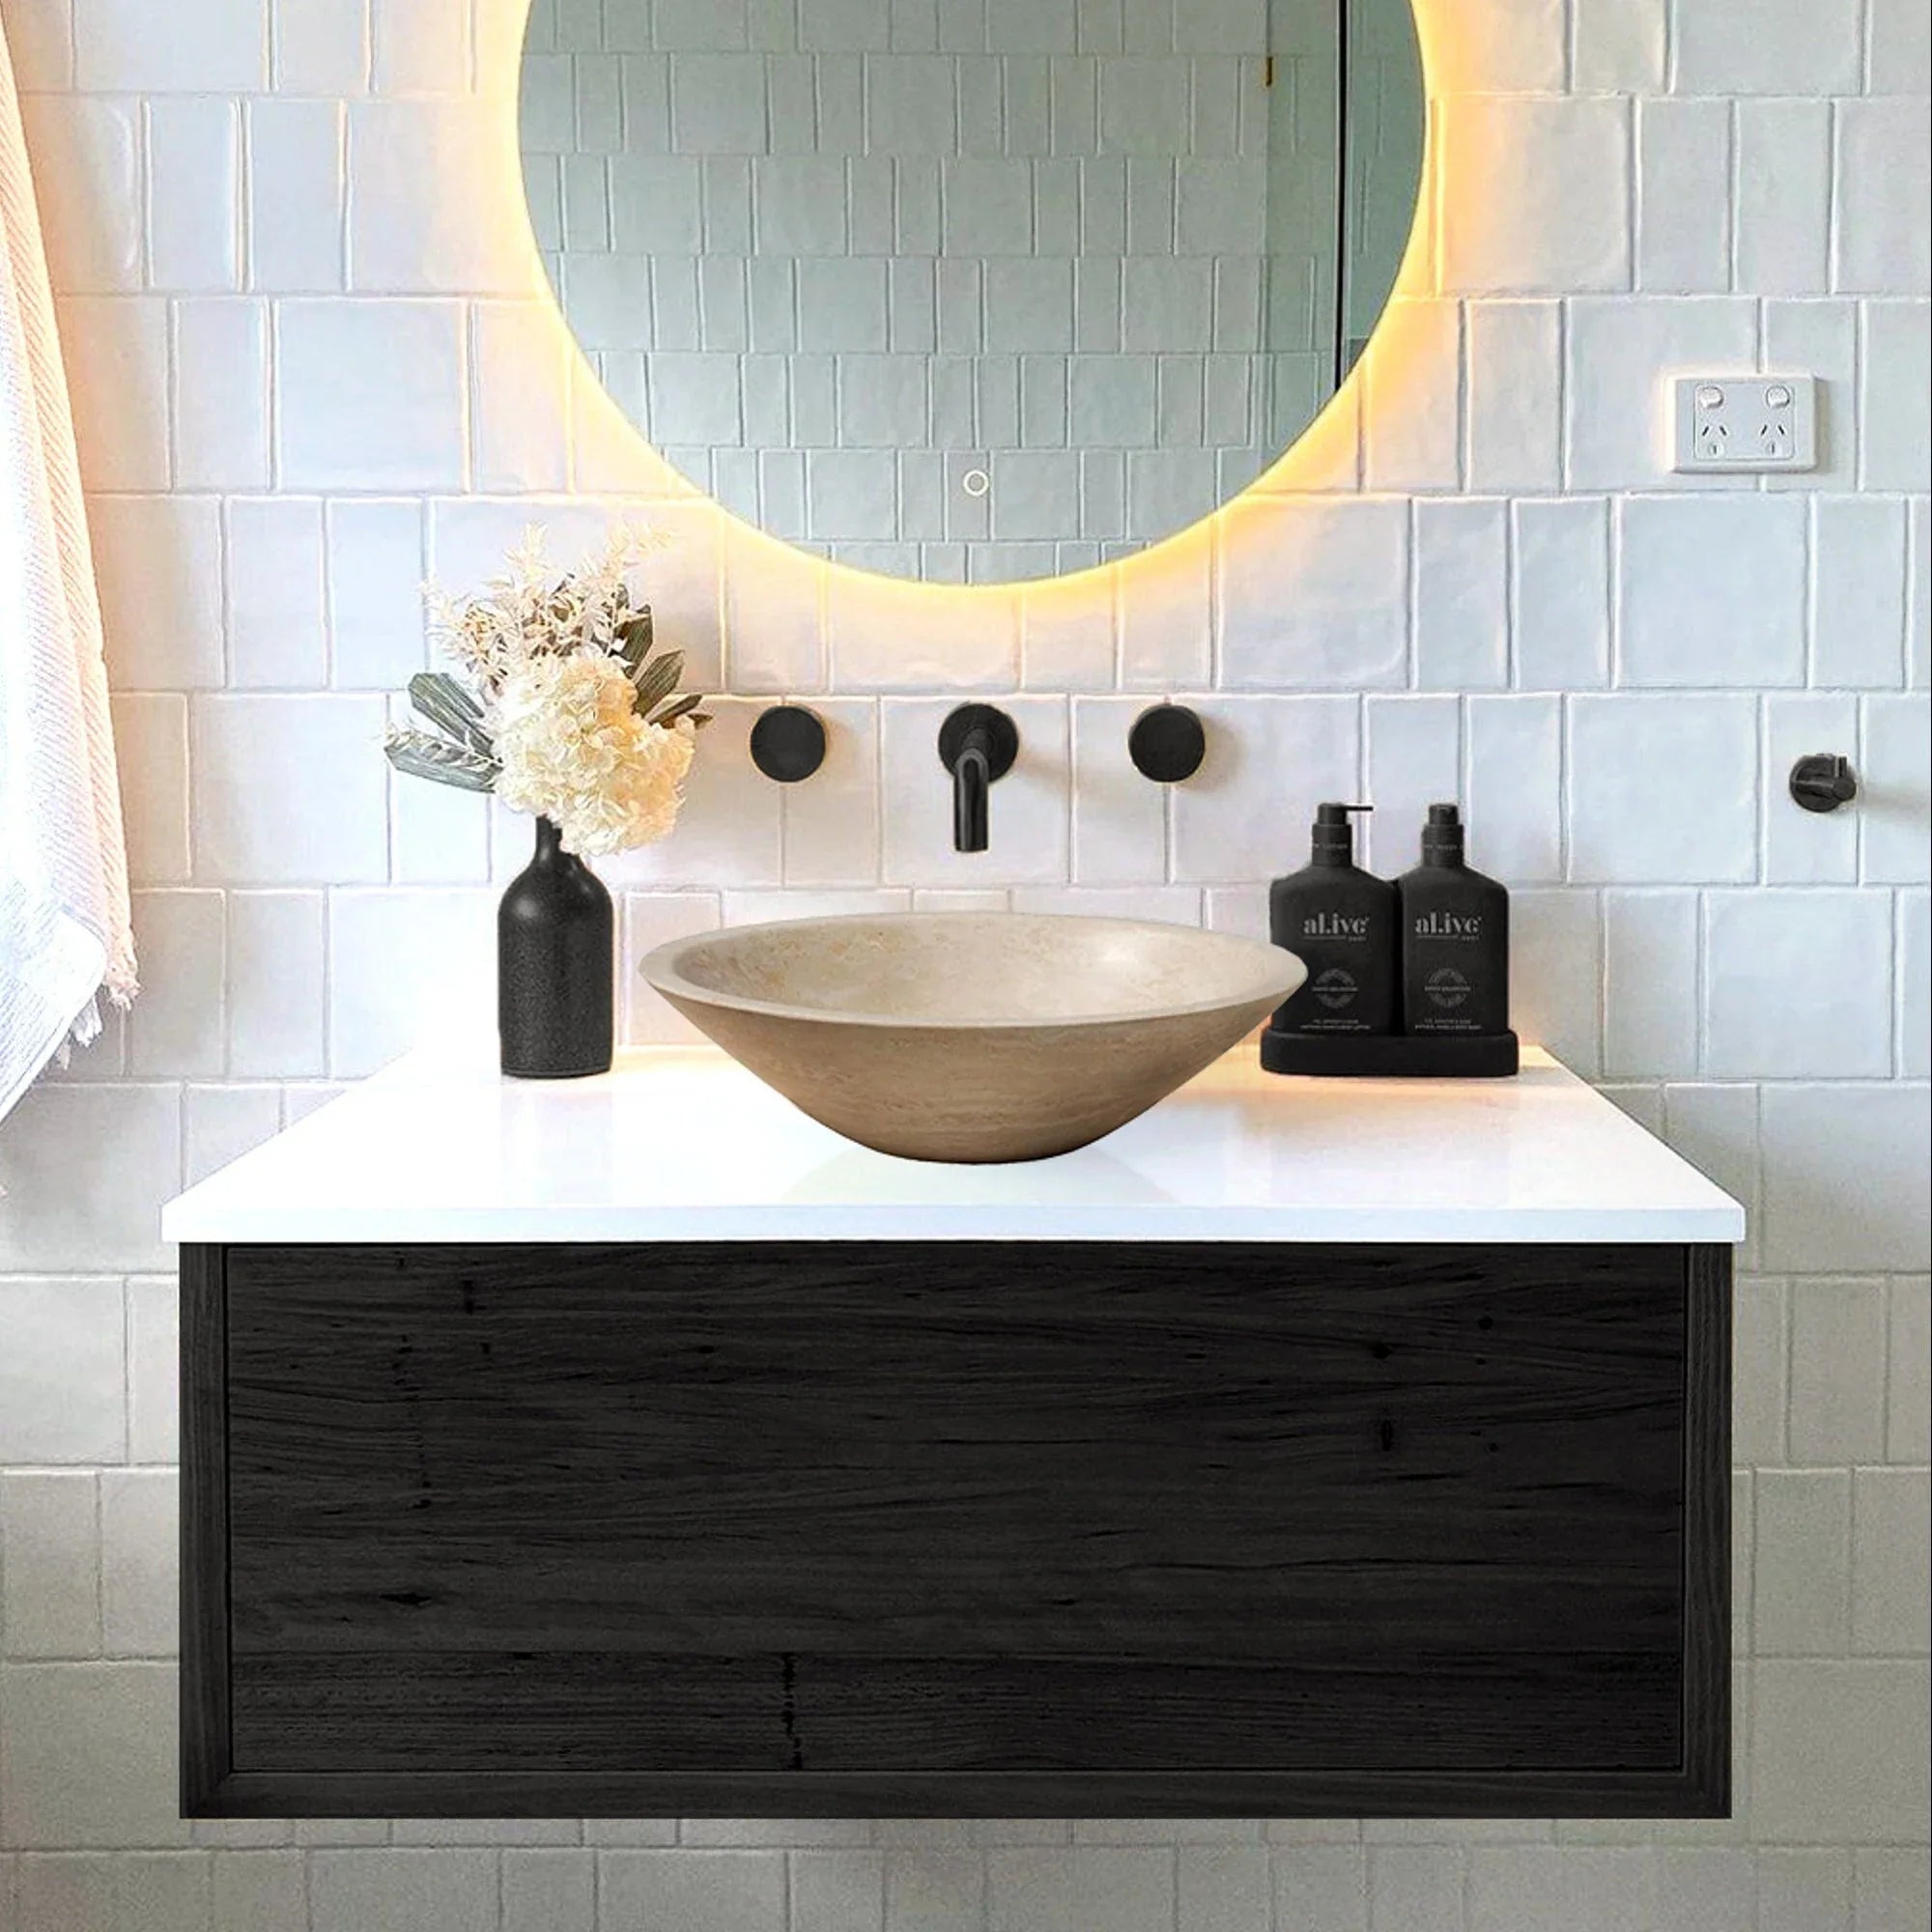 Light Beige Travertine Natural Stone Oval Above Vanity Bathroom Vessel Sink Polished